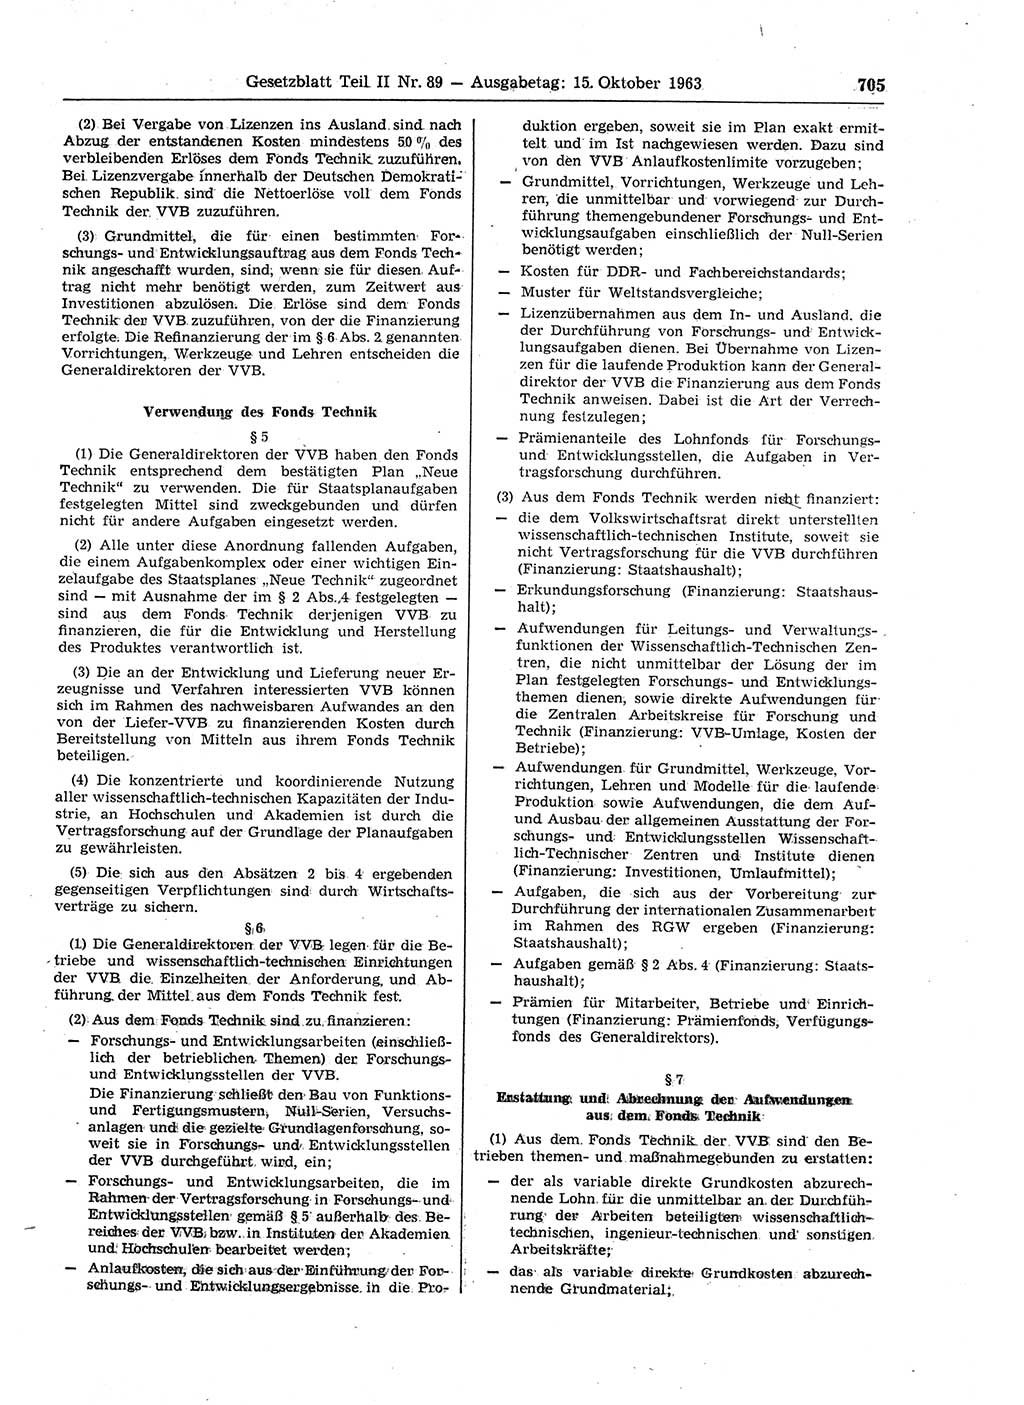 Gesetzblatt (GBl.) der Deutschen Demokratischen Republik (DDR) Teil ⅠⅠ 1963, Seite 705 (GBl. DDR ⅠⅠ 1963, S. 705)